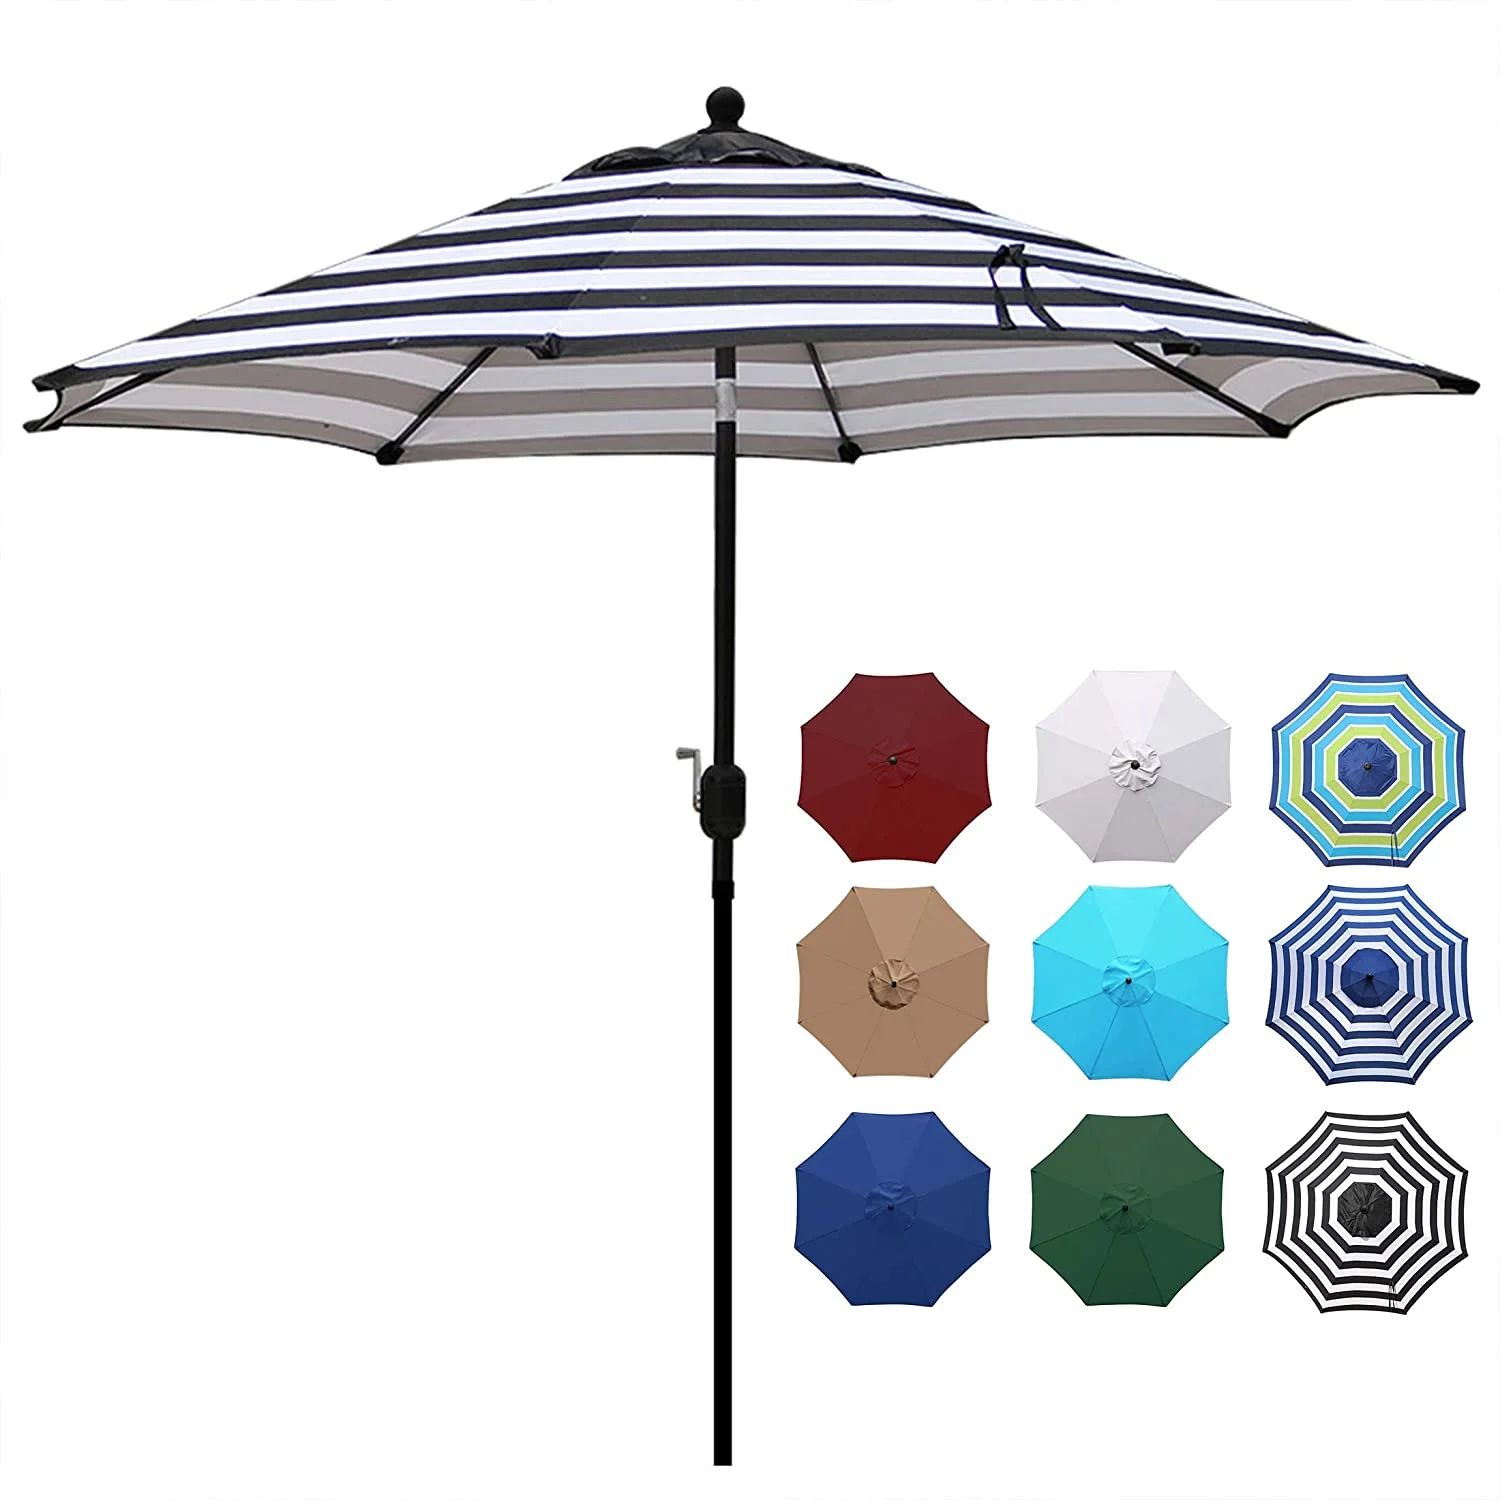 Blissun 9' Outdoor Aluminum Patio Umbrella, Striped Patio Umbrella, Market Striped Umbrella with ... | Walmart (US)